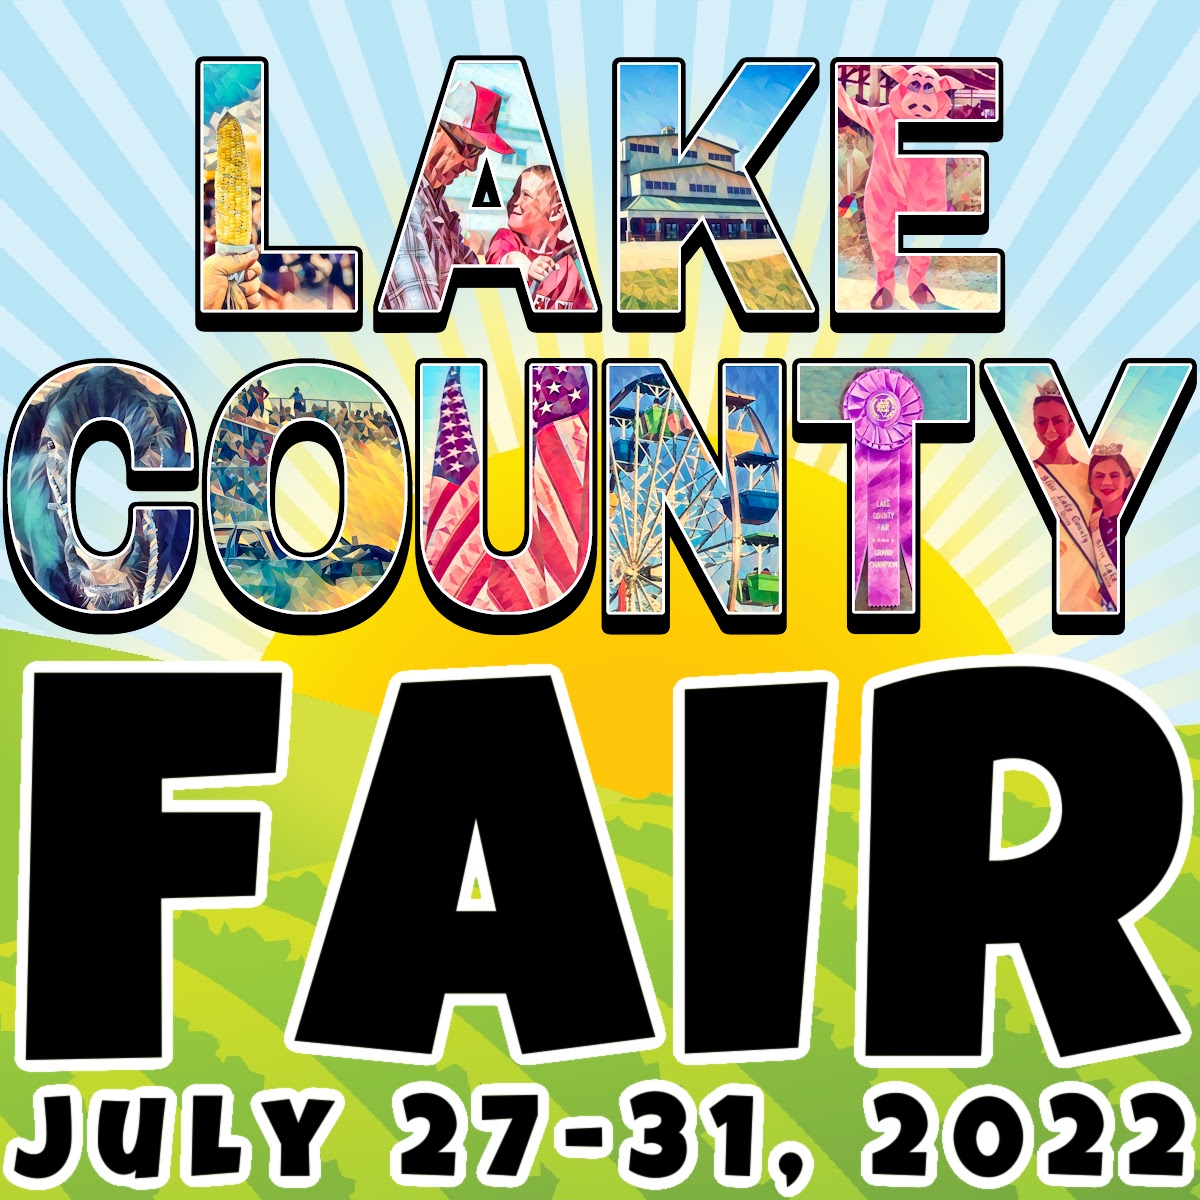 The Lake County Fair